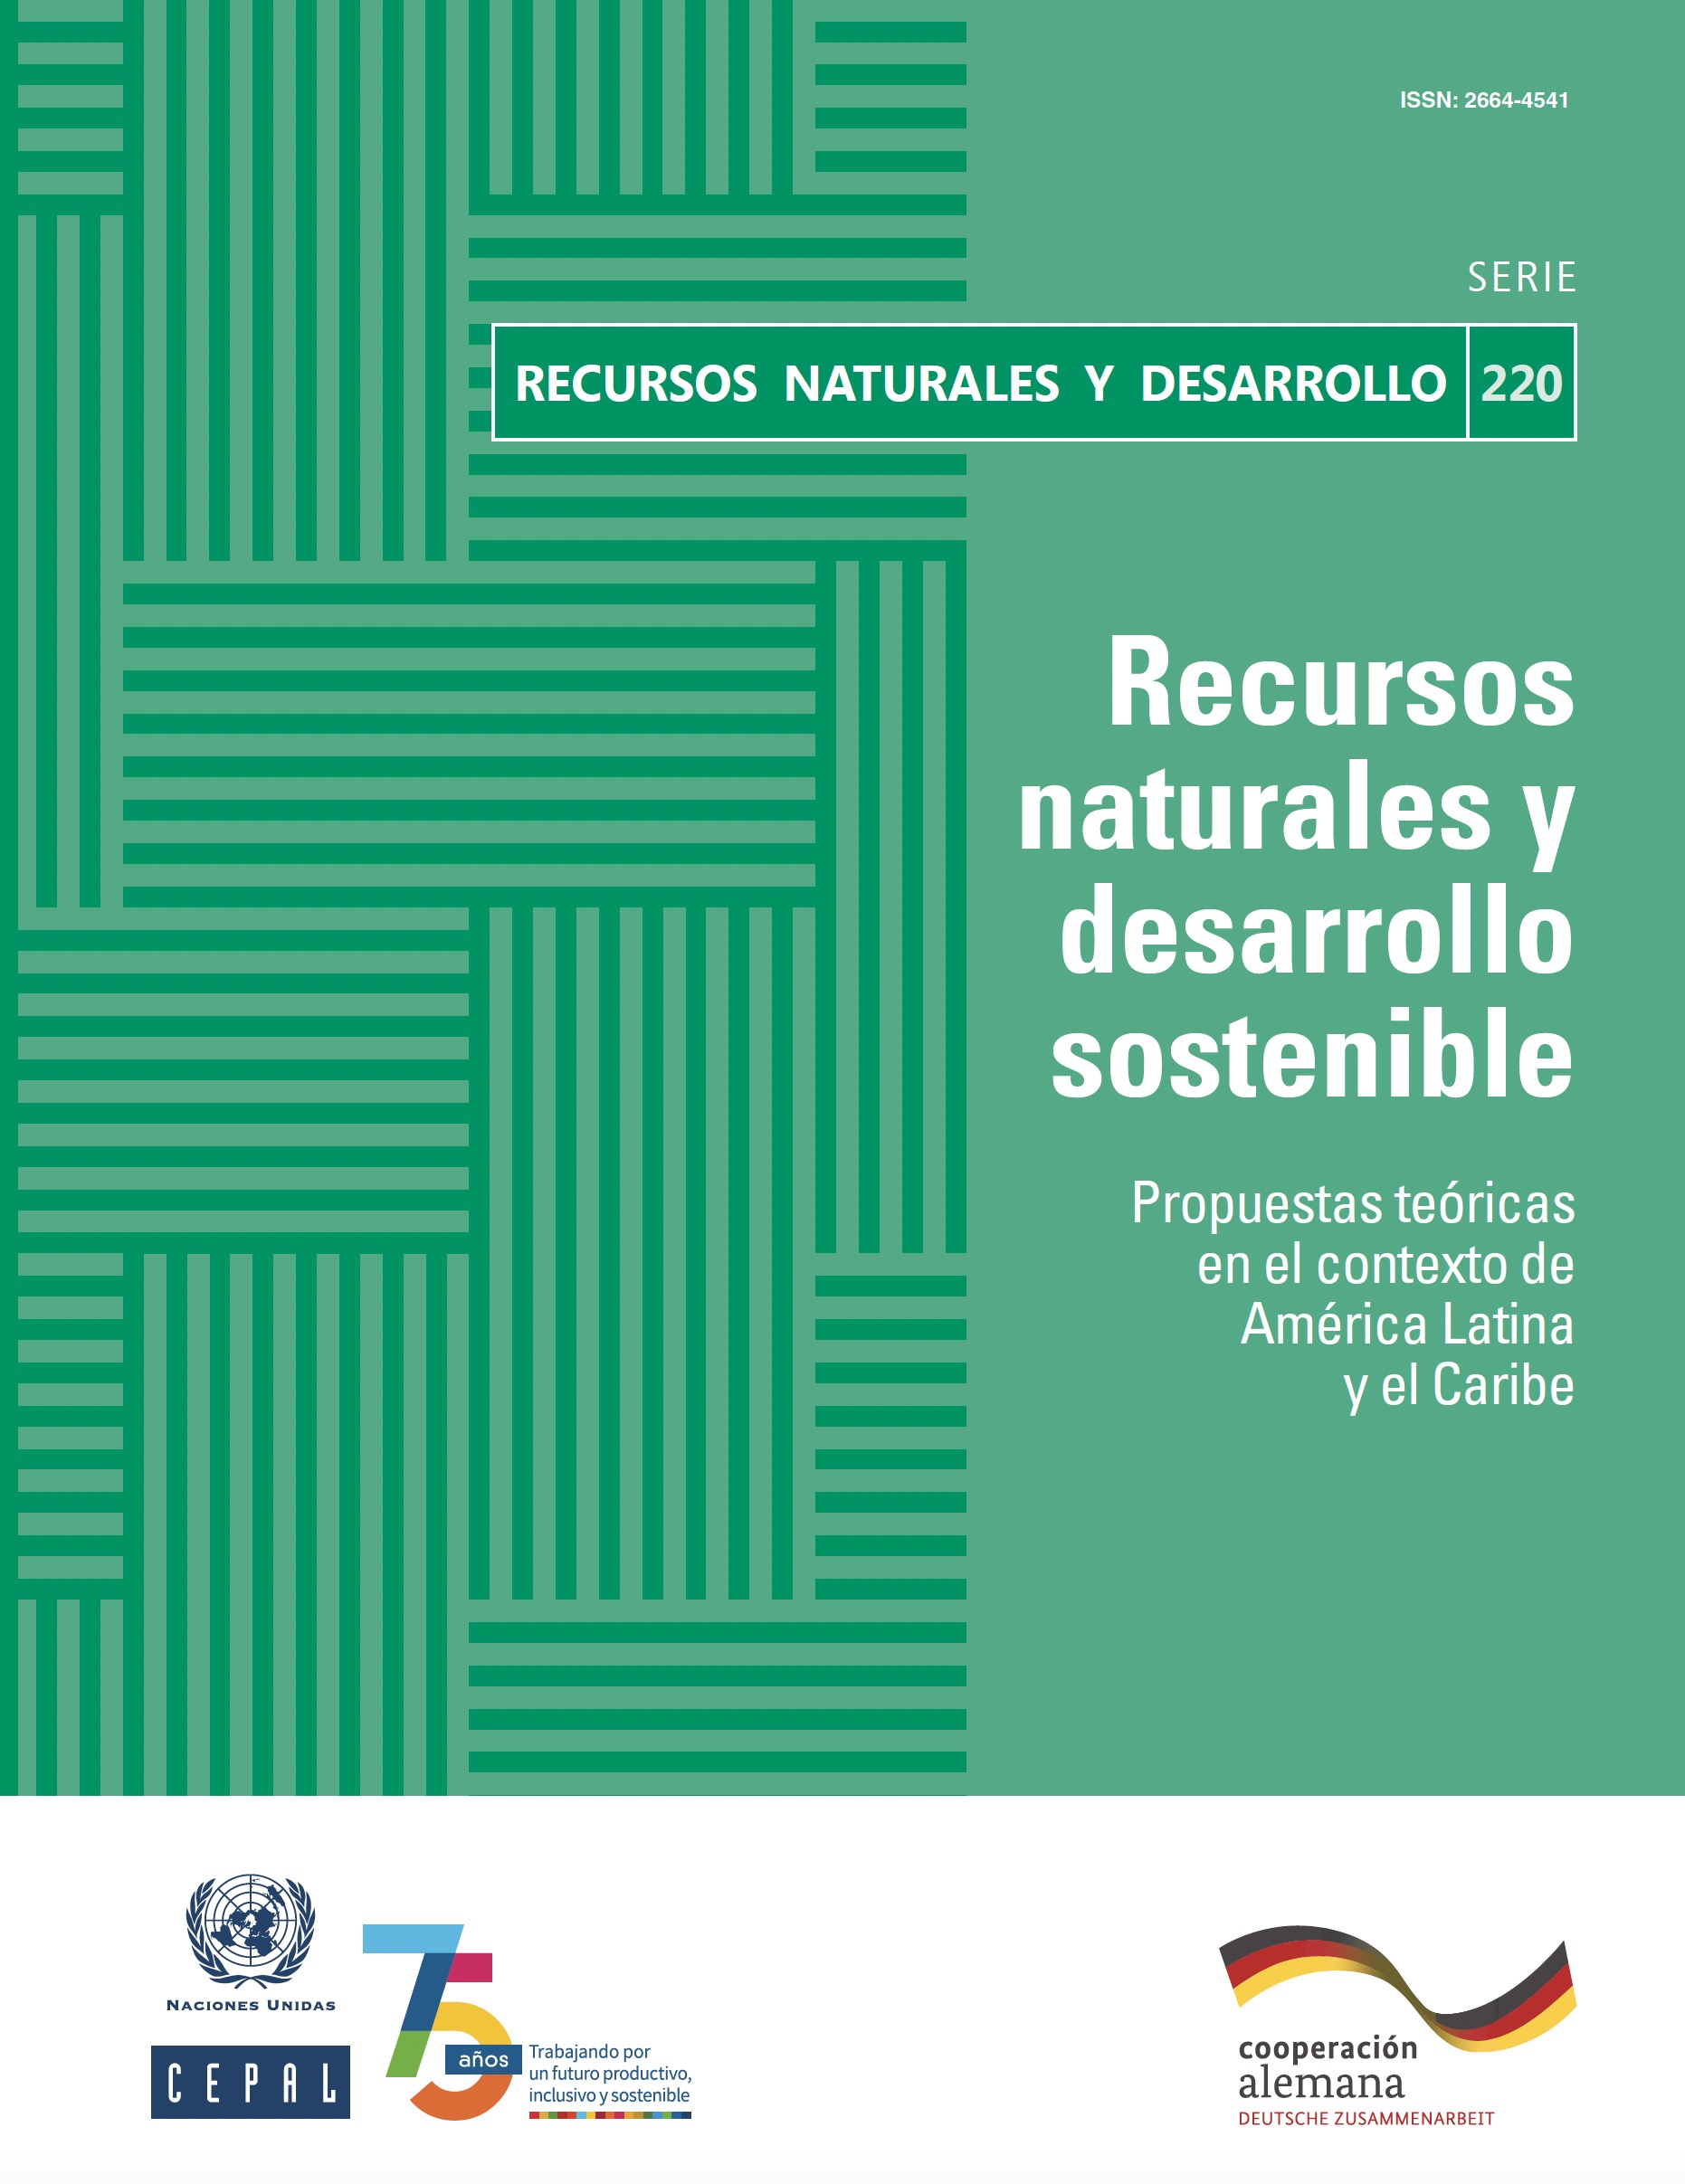 Recursos naturales y desarrollo sostenible: propuestas teóricas en el contexto de América Latina y el Caribe